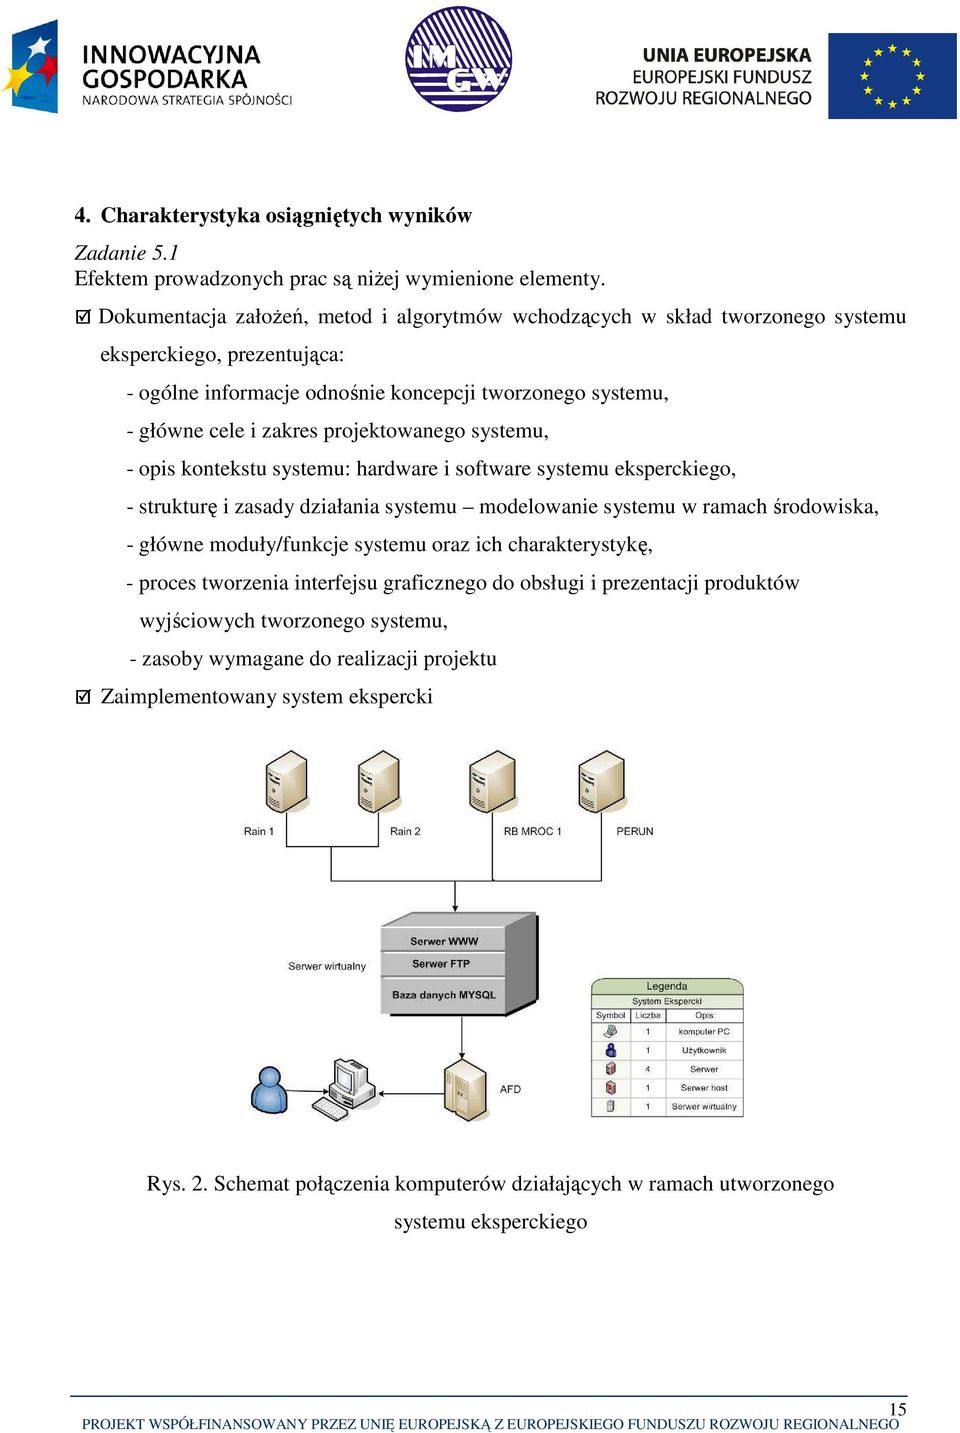 projektowanego systemu, - opis kontekstu systemu: hardware i software systemu eksperckiego, - strukturę i zasady działania systemu modelowanie systemu w ramach środowiska, - główne moduły/funkcje